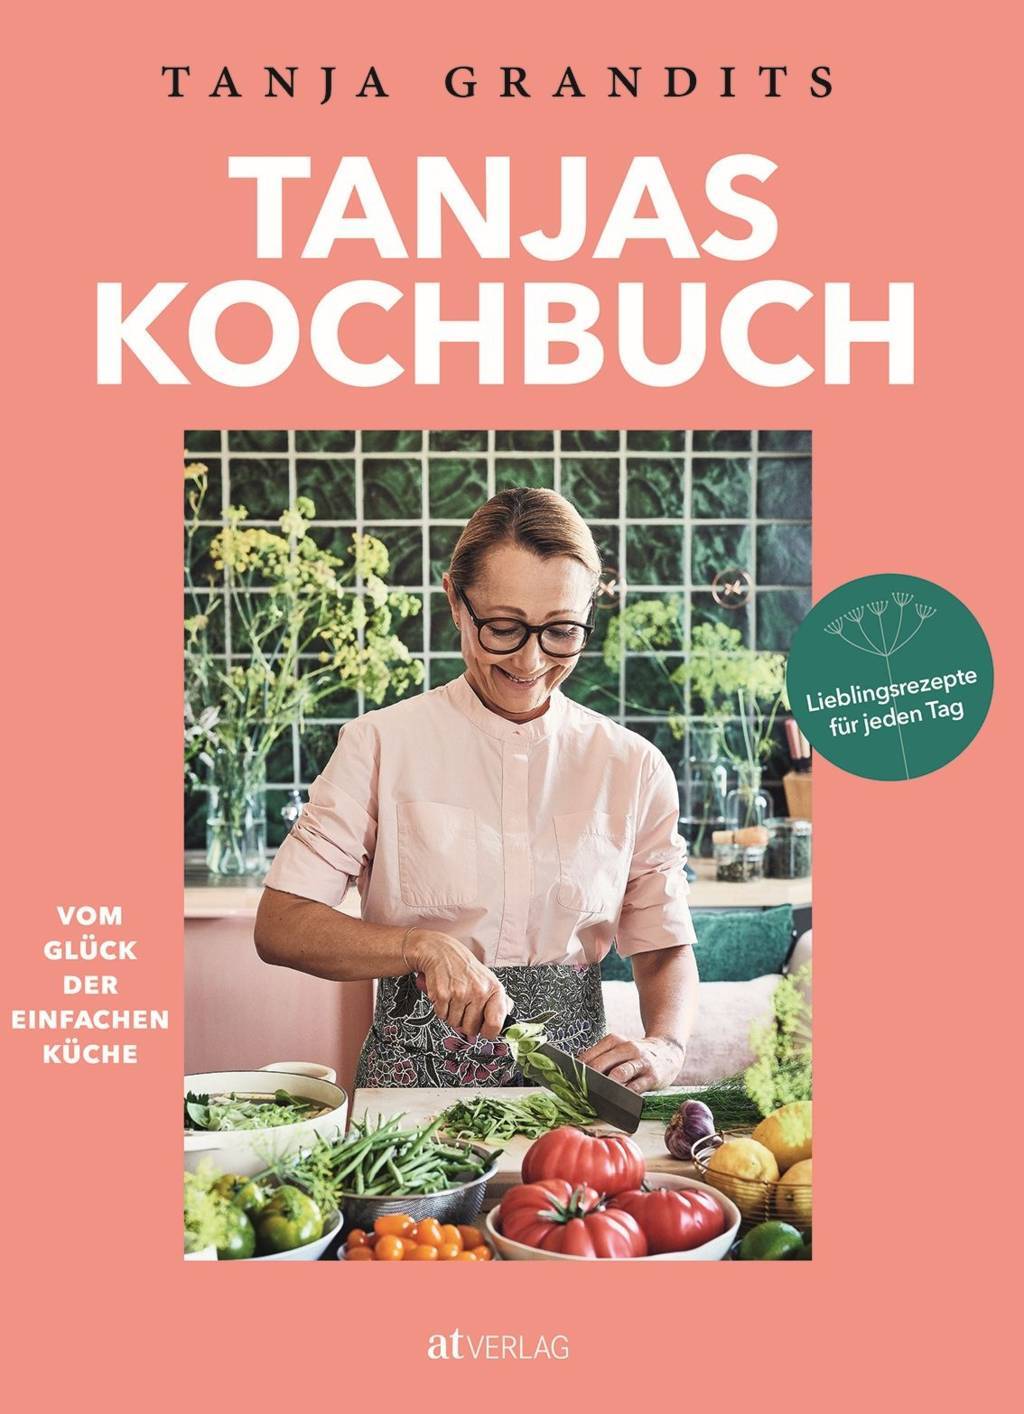 Tanjas-Kochbuch-Vo-Glück-der-einfachen-Küche-Lieblingsrezepte-für-jeden-Tag